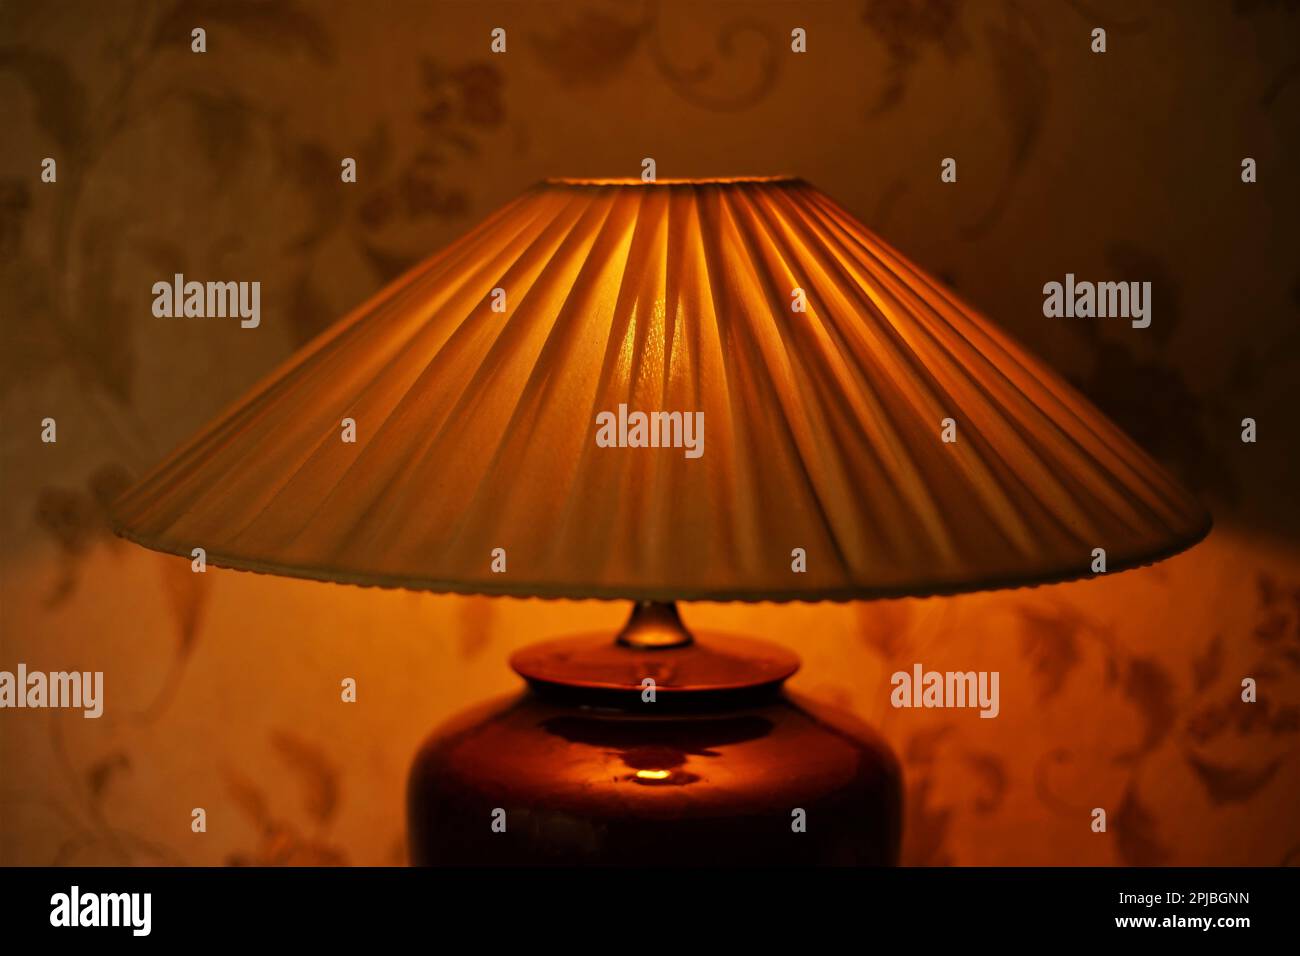 Faltenlampenschirm mit warmem Licht im dunklen Raum, Nahaufnahme Stockfoto